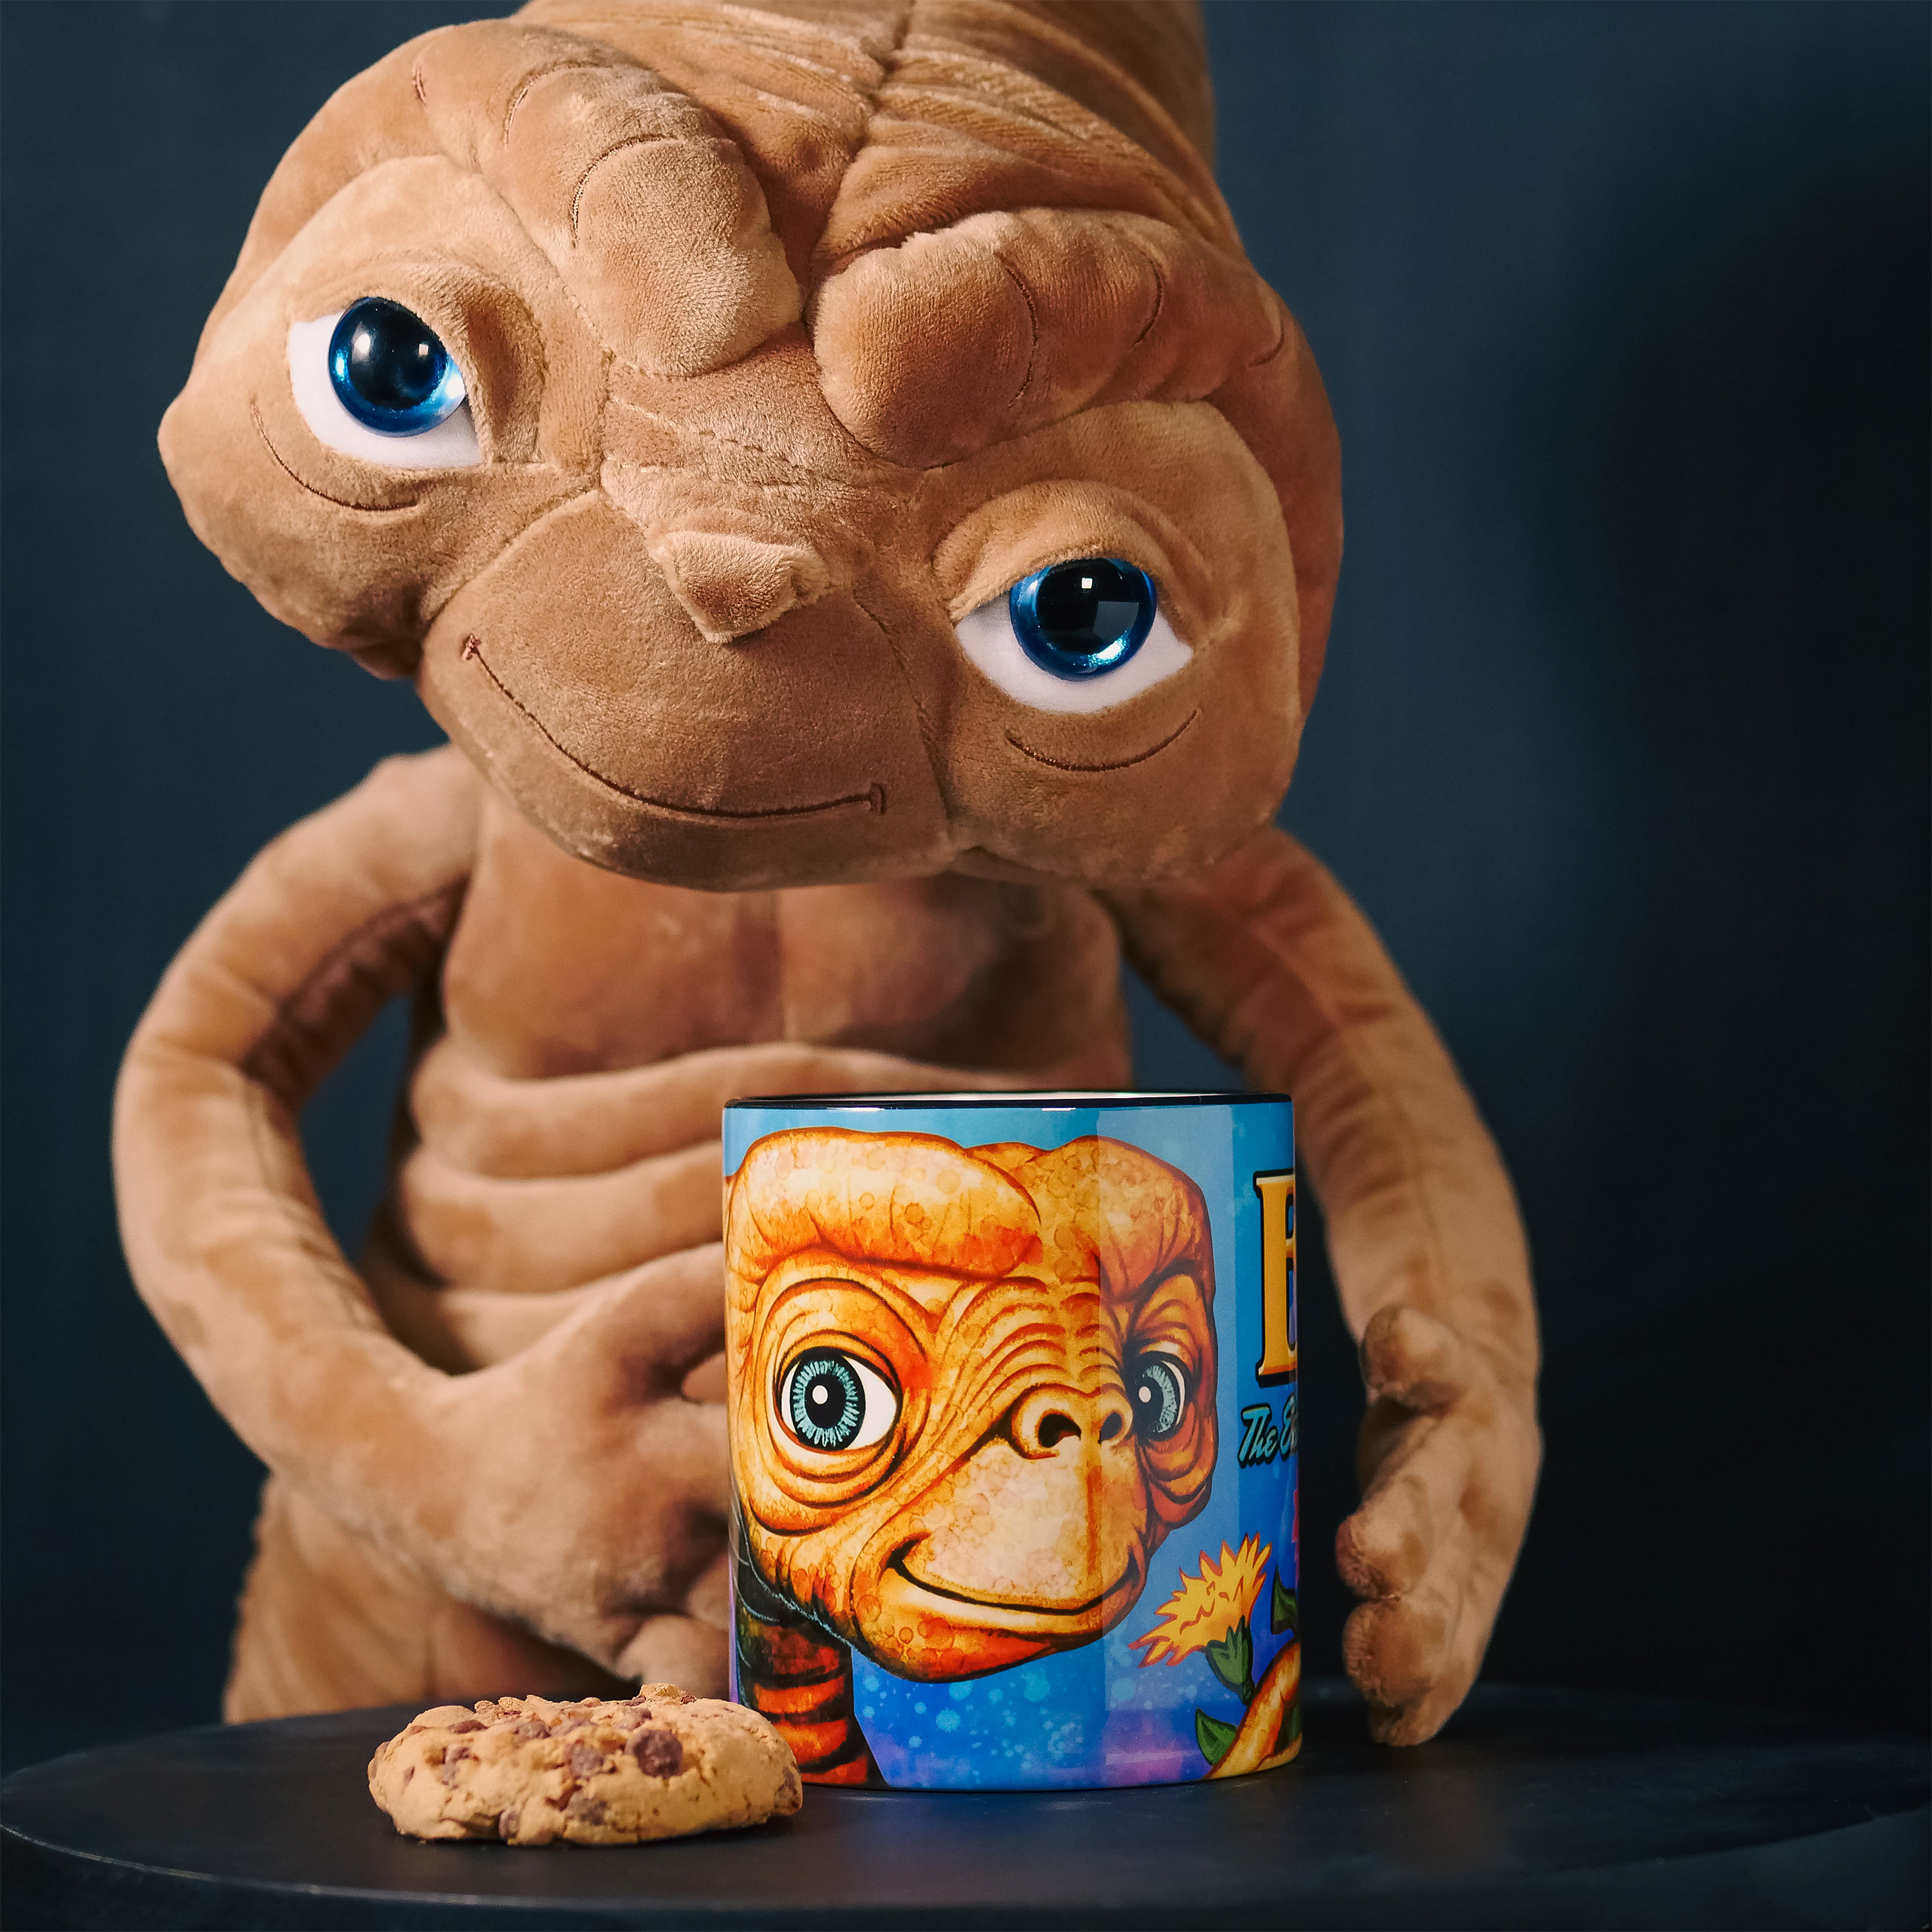 E.T. - Flowers Mug